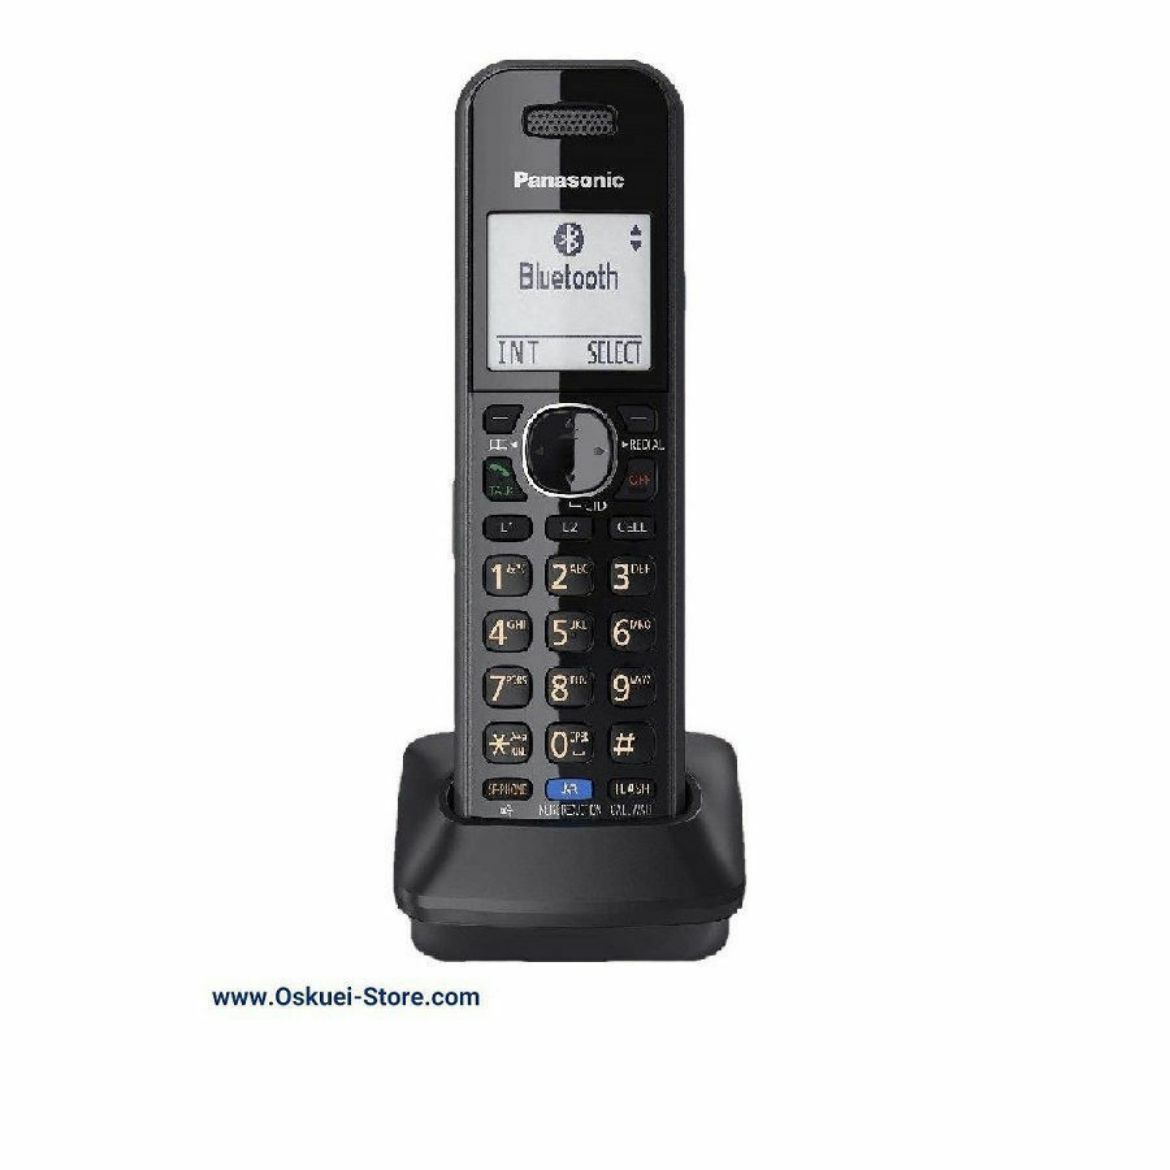 Panasonic KX-TGA950 Cordless Telephone Black